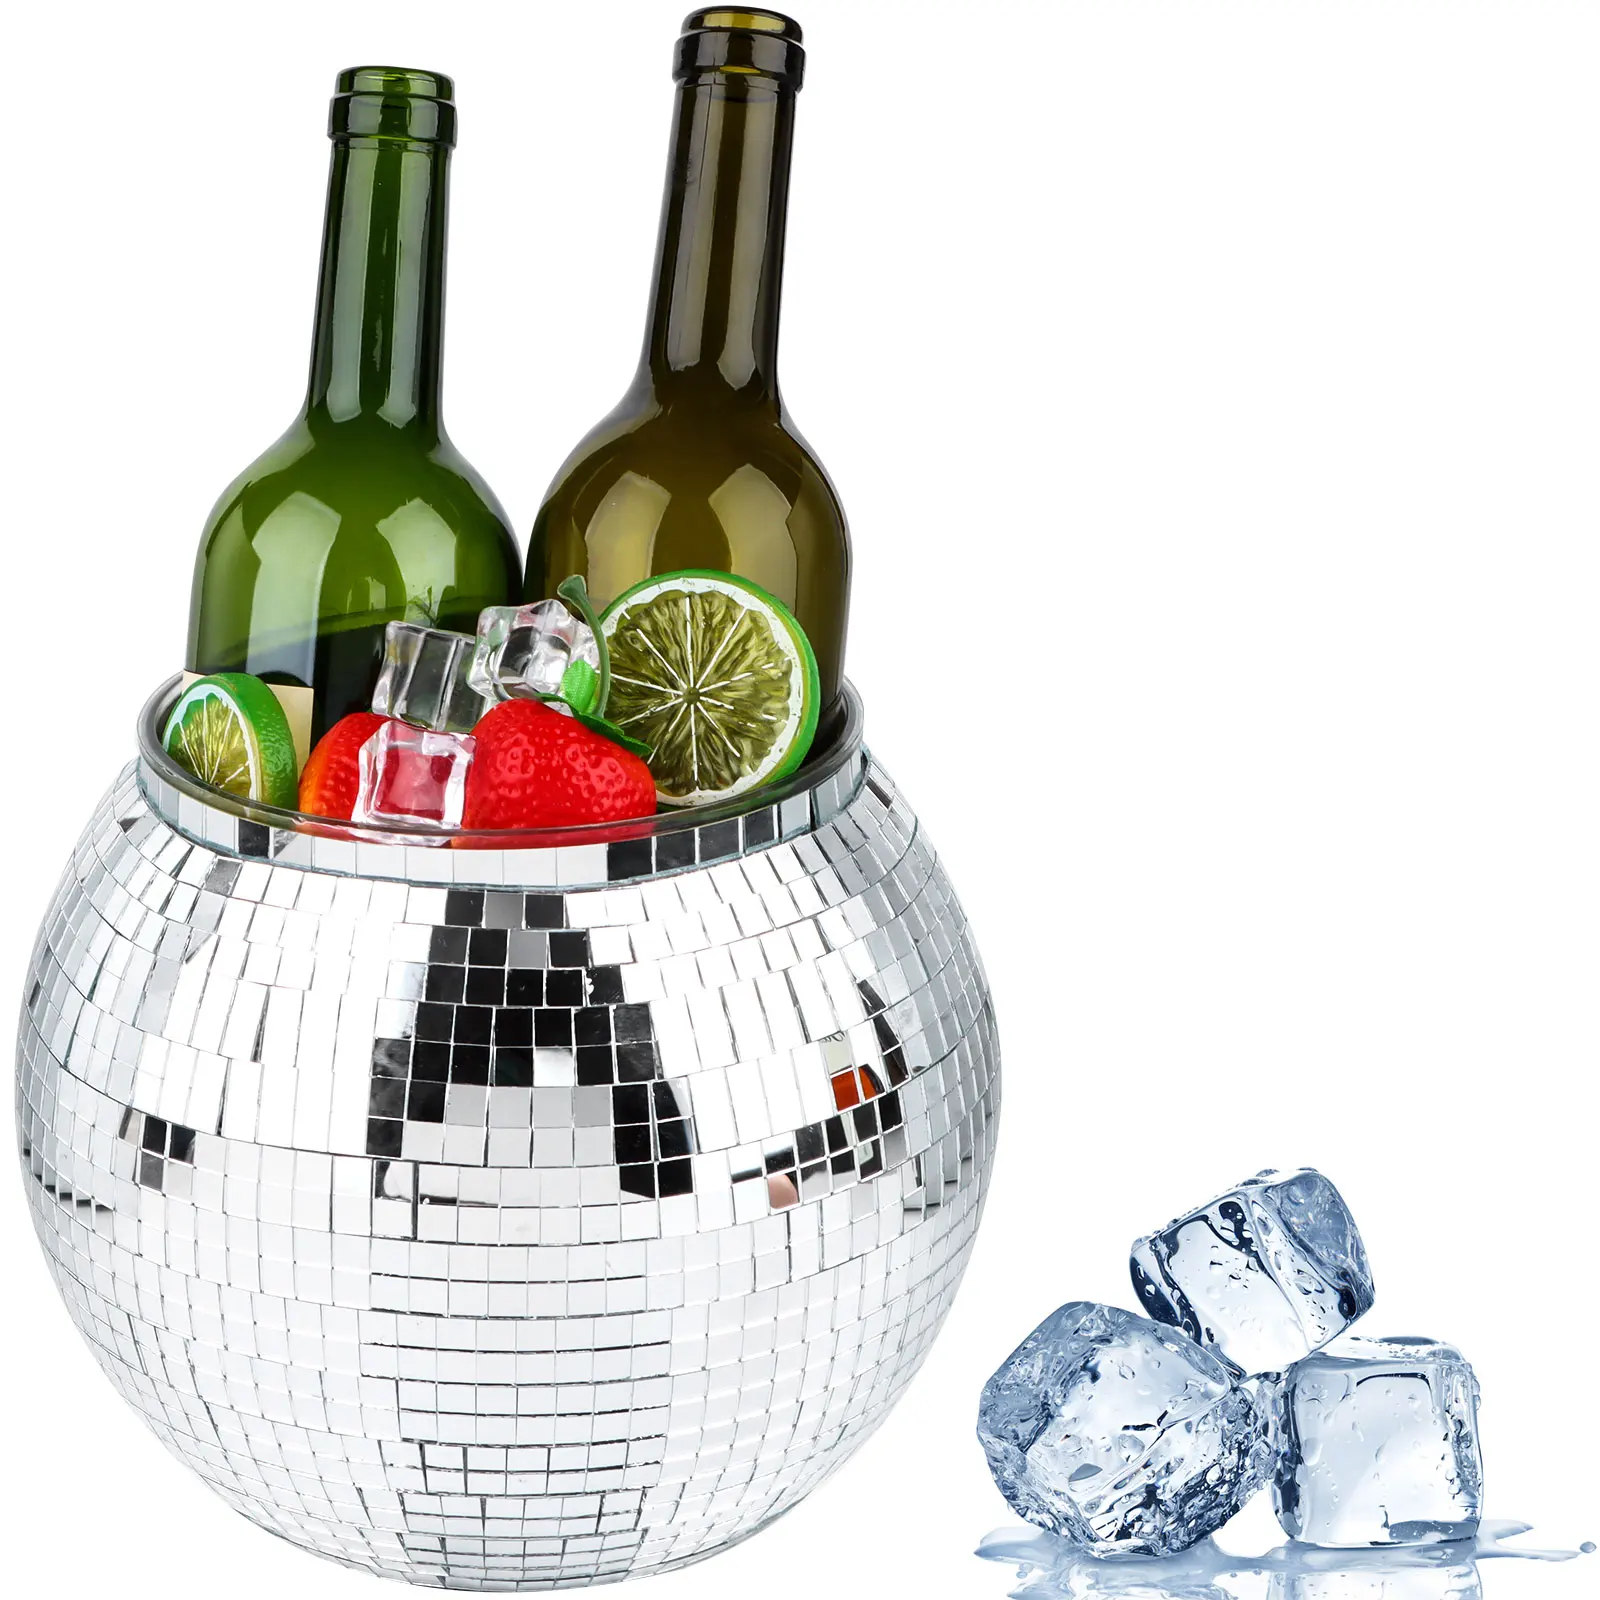 

Ведро для диско-льда, серебряное ведро для диско-мяча, зеркальное ведро для коктейлей в стиле ретро, украшение для диско, ведро для напитков и льда, модная посуда для напитков